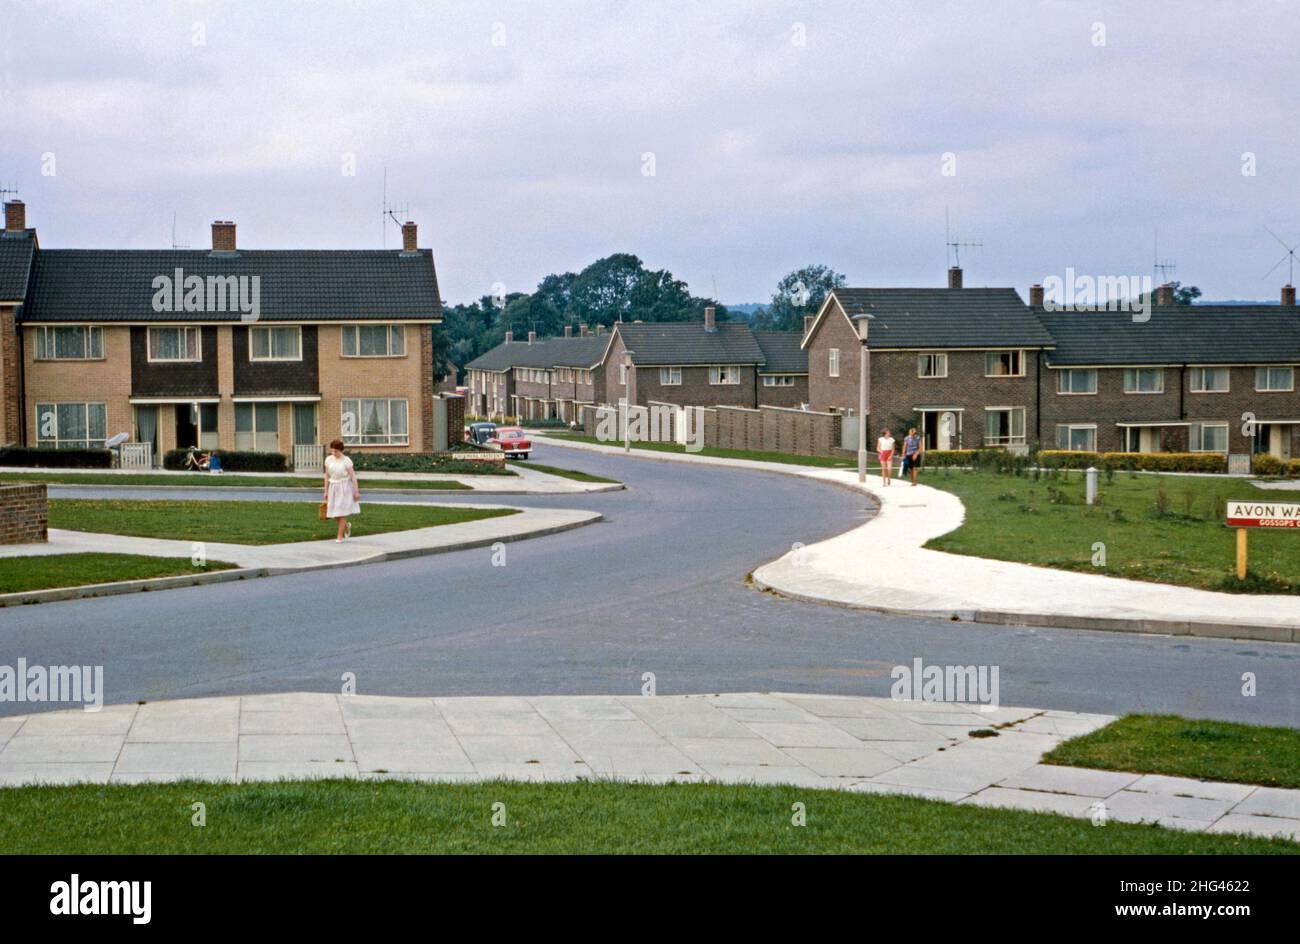 Une vue à l'ouest le long de Rother Crescent dans la zone verte de Gossops de Crawley 'New Town', West Sussex, Angleterre, Royaume-Uni en 1966.Le quartier, à l'ouest du centre-ville, était l'une des 14 banlieues développées pour créer la "nouvelle ville" d'après-guerre.Après la Seconde Guerre mondiale, afin de relocaliser ceux qui vivent dans des logements pauvres ou bombardés à Londres, un grand nombre de personnes et d'emplois ont été déplacés dans de nouvelles villes autour de la se Angleterre et Crawley en était une : une photographie vintage de 1960s. Banque D'Images